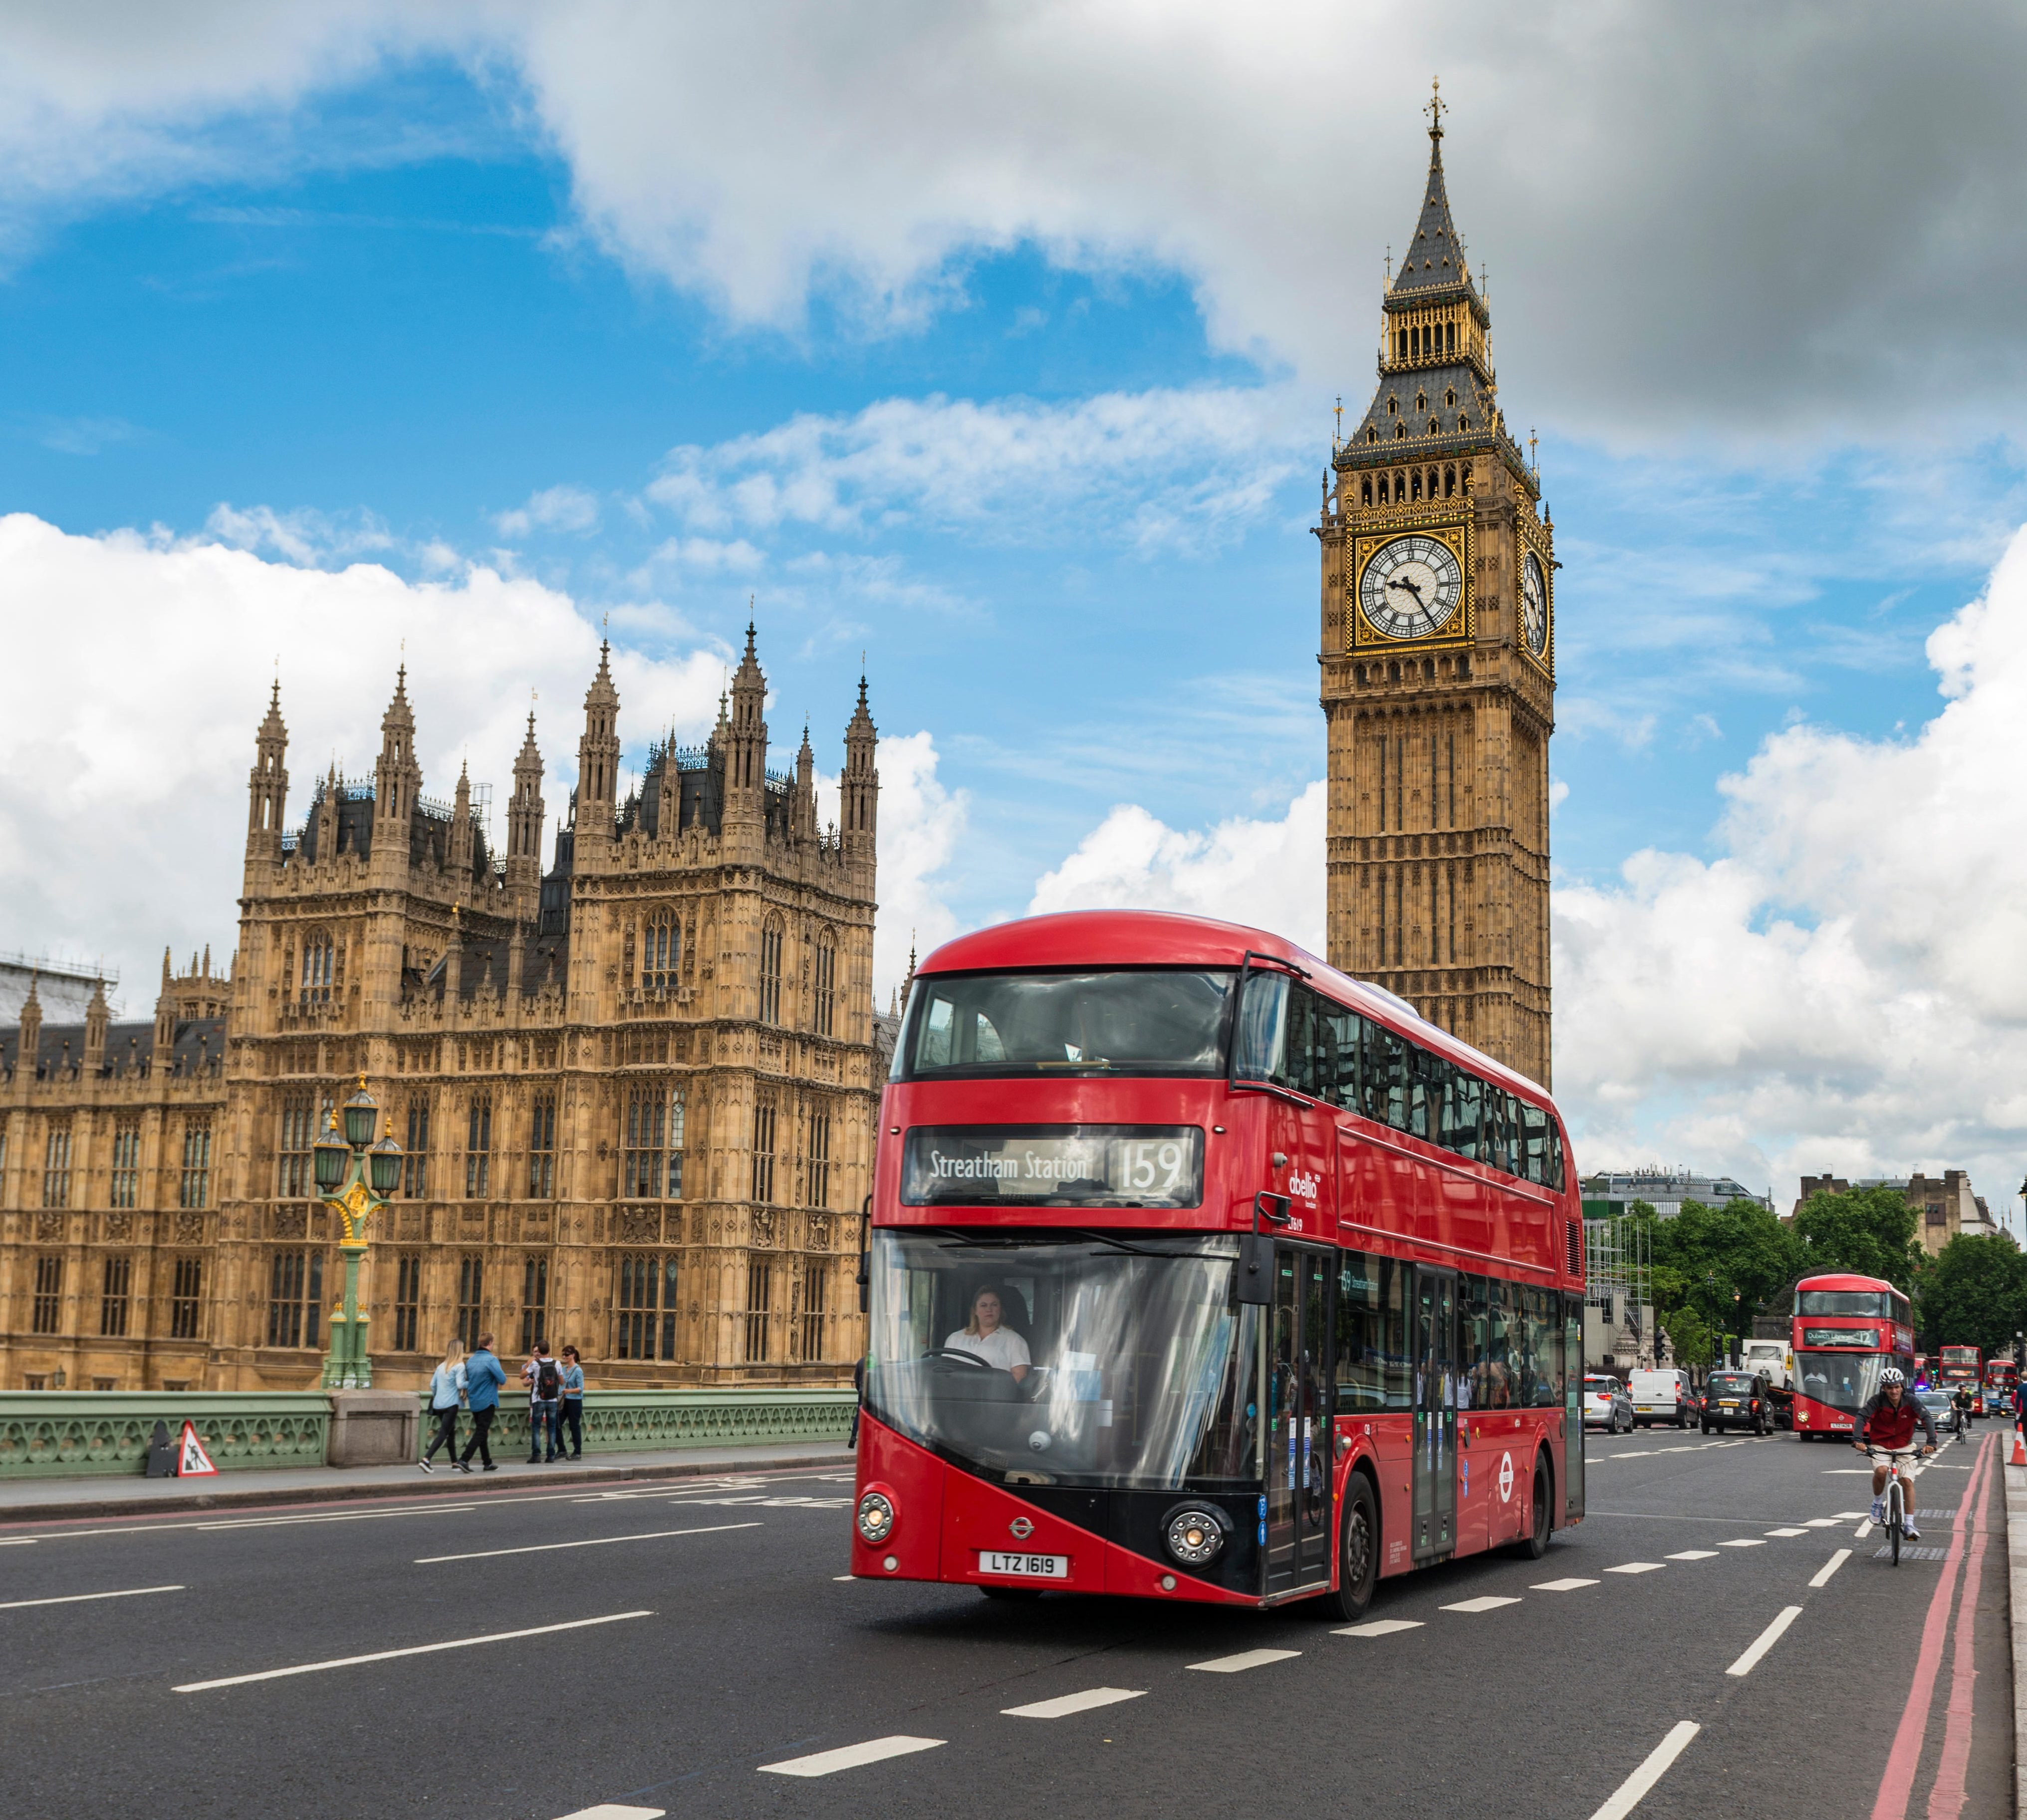 Лондон любой. Дабл Деккер в Лондоне. Англия Биг Бен. Дабл Деккер автобус символ Лондона. Двухэтажные автобусы в Лондоне с Биг Бен.